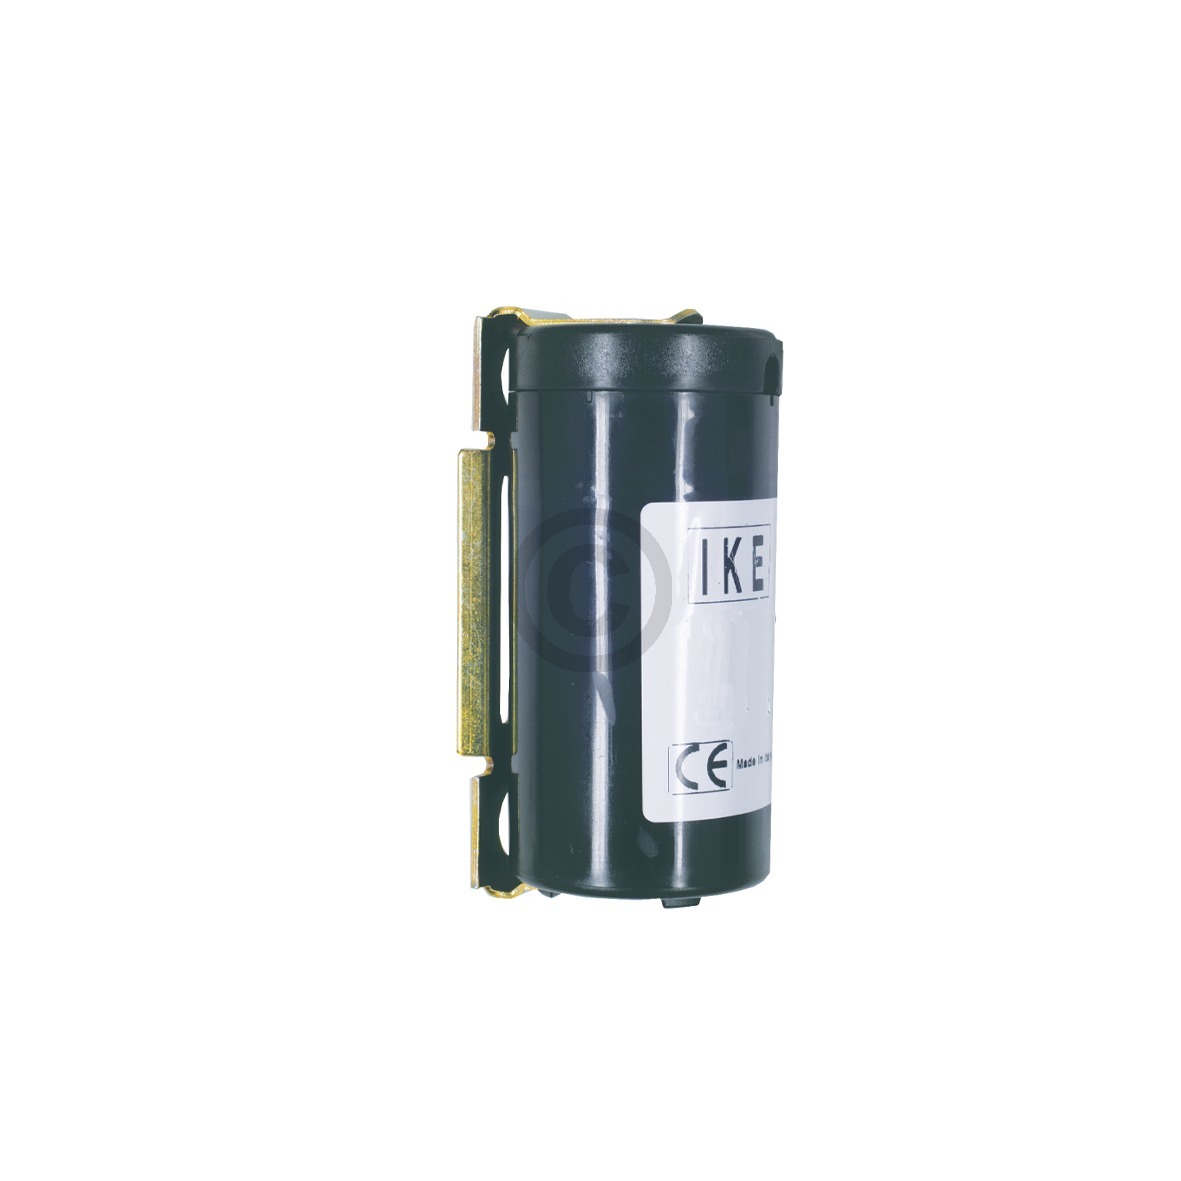 Kondensator 80-100µF 125-320VAC Universal für Kältekompressor